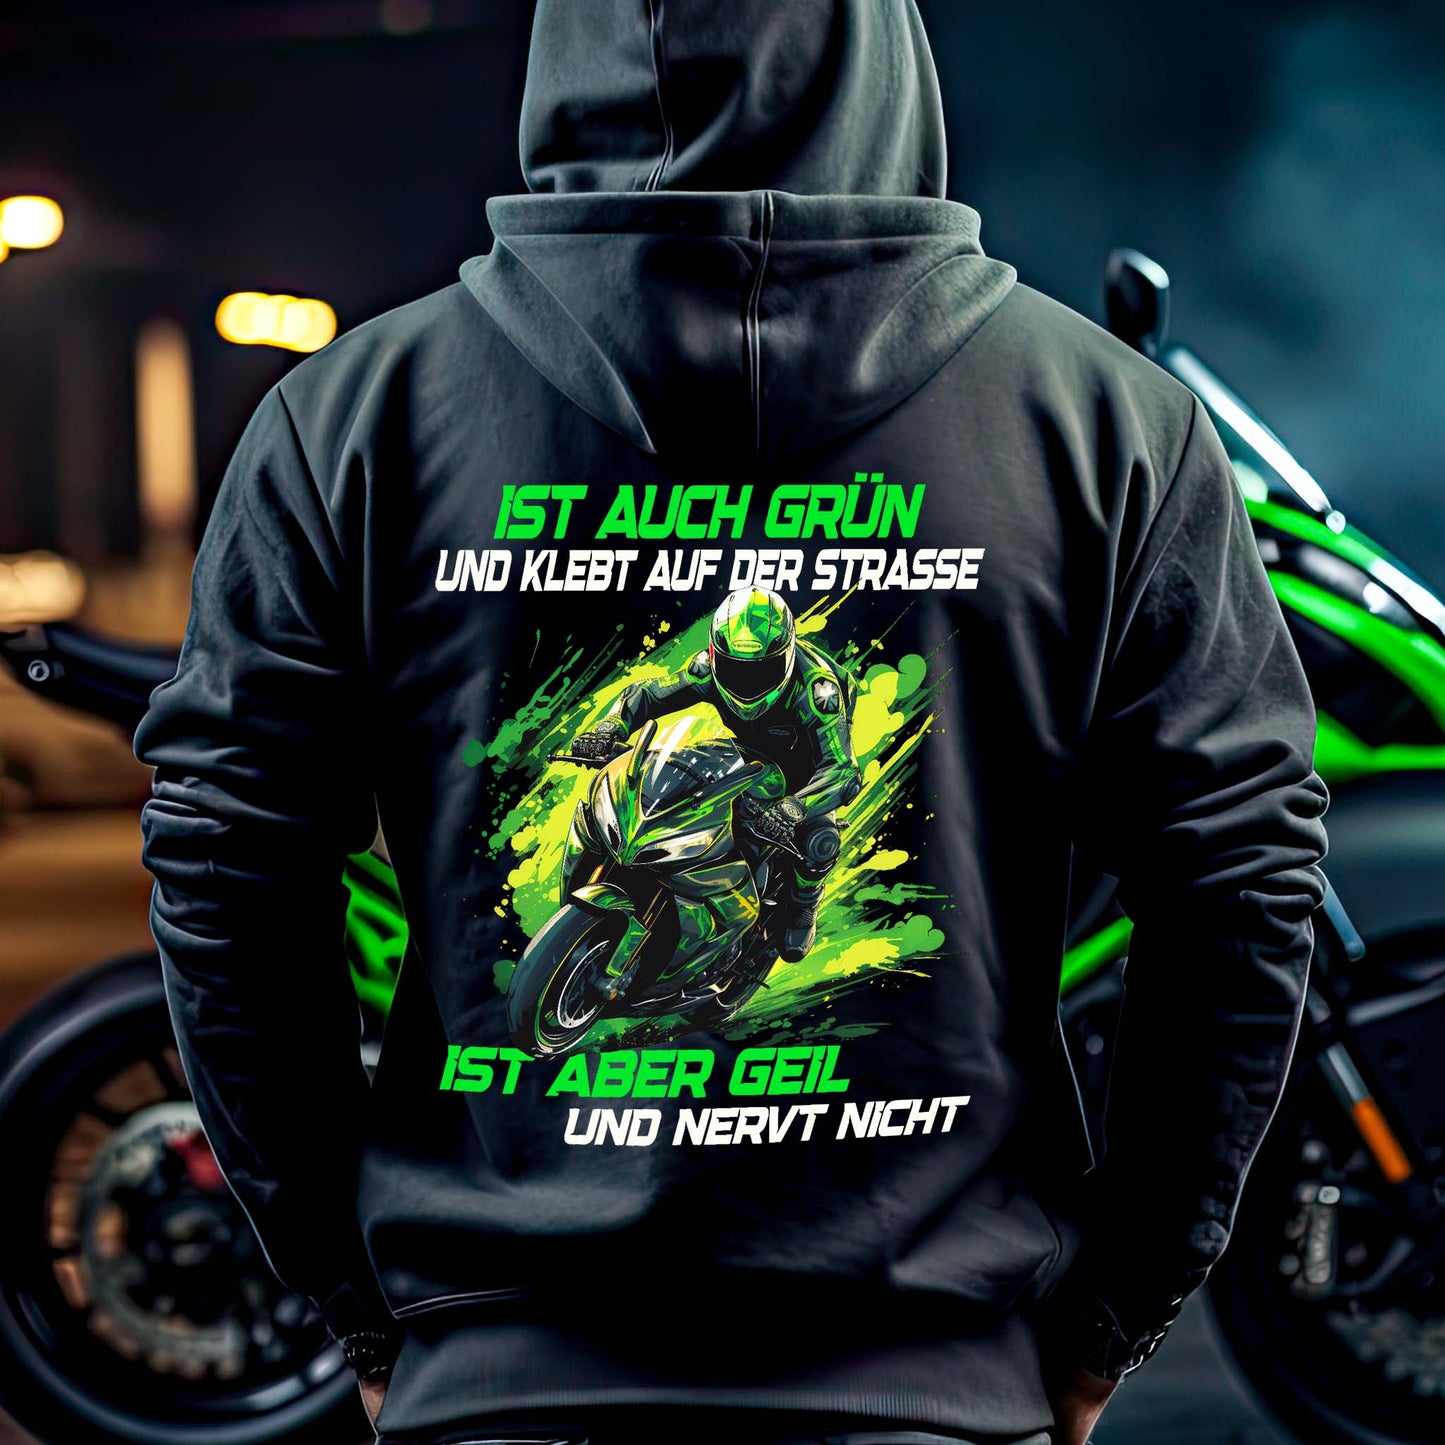 Ein Motorradfahrer mit einer Reißverschluss-Jacke von Wingbikers mit dem Aufdruck, Ist auch grün und klebt auf der Straße, ist aber geil und nervt nicht, in schwarz.